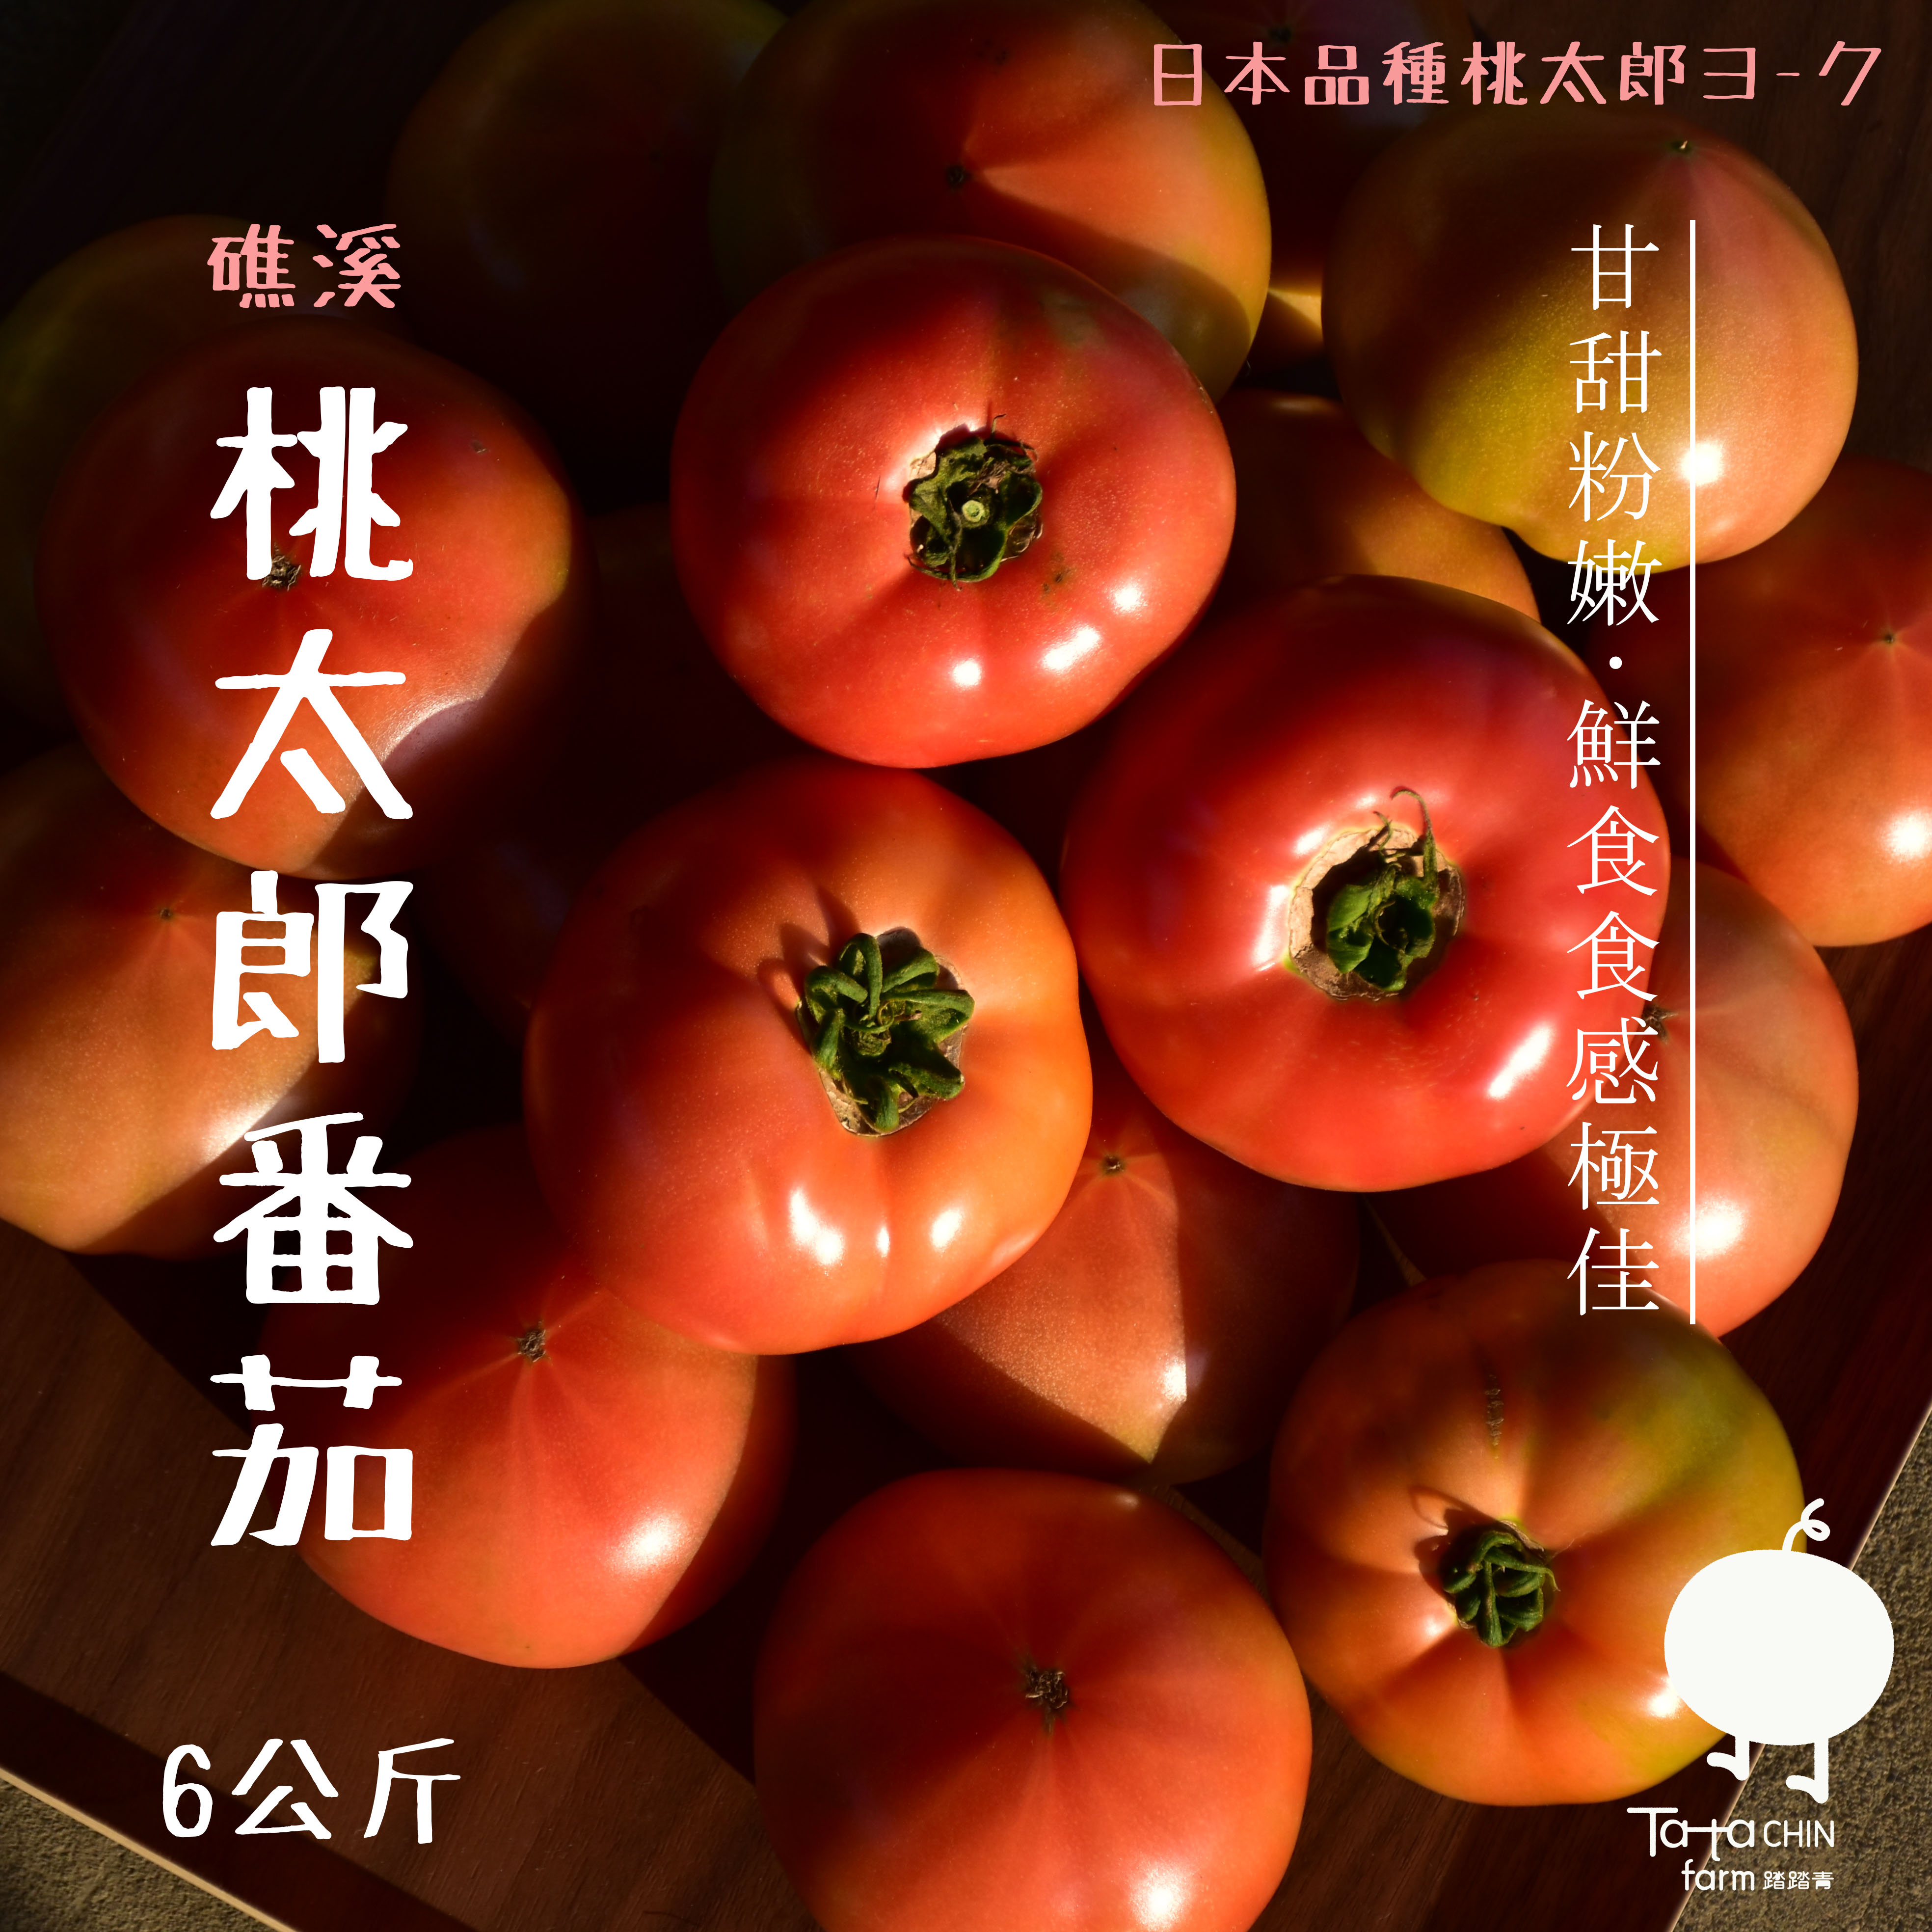 【踏踏青農場】桃太郎番茄-礁溪溫泉番茄(6kg/箱)